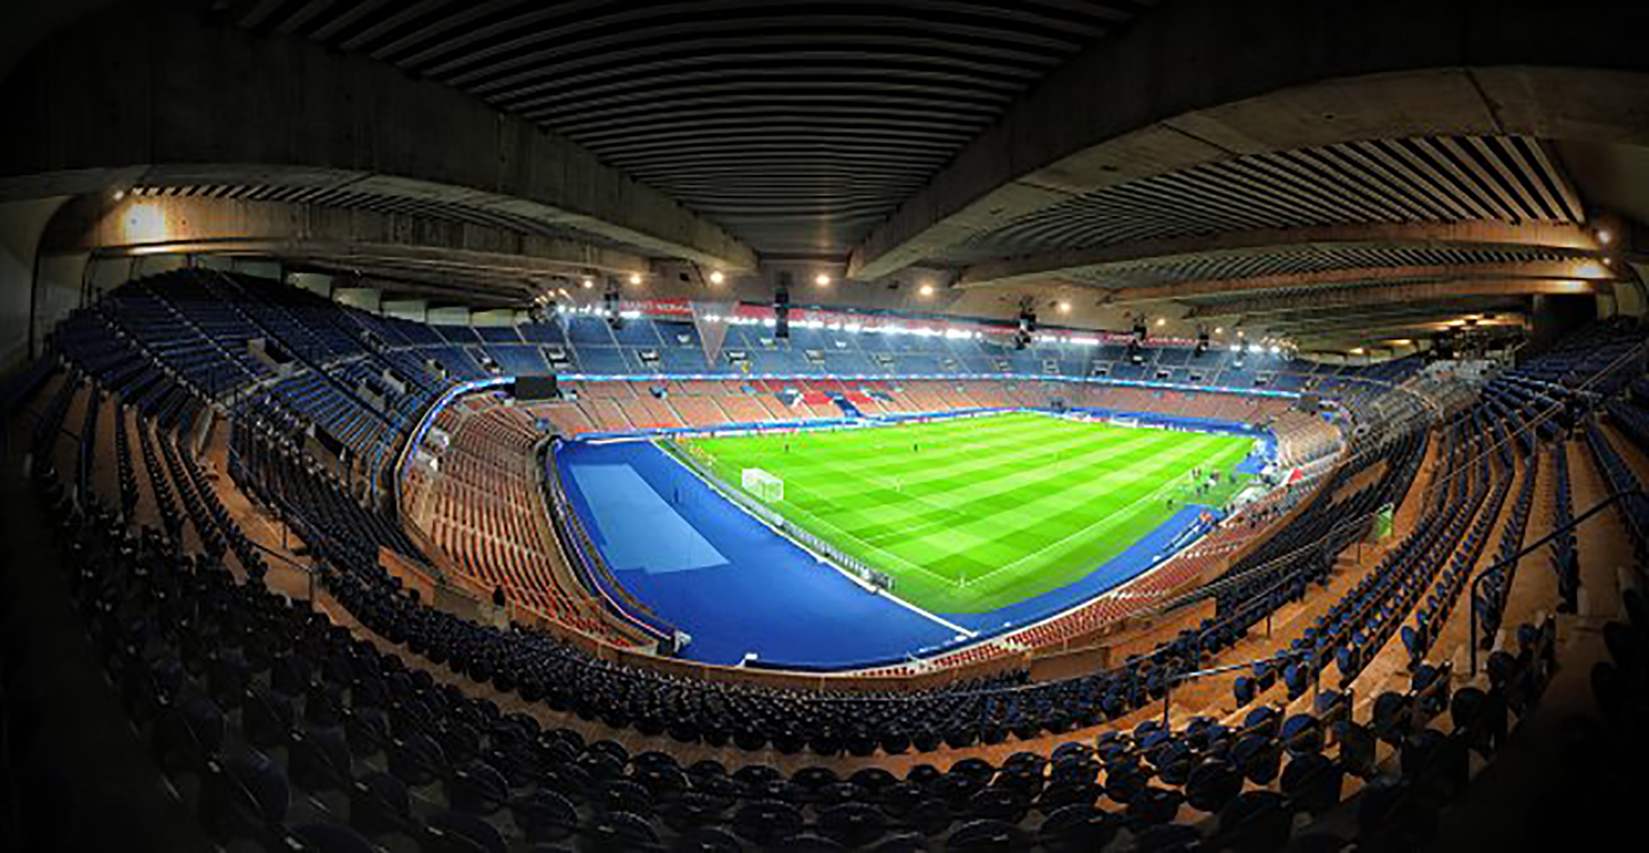 Paris Saint-Germain FC - Parc des Princes